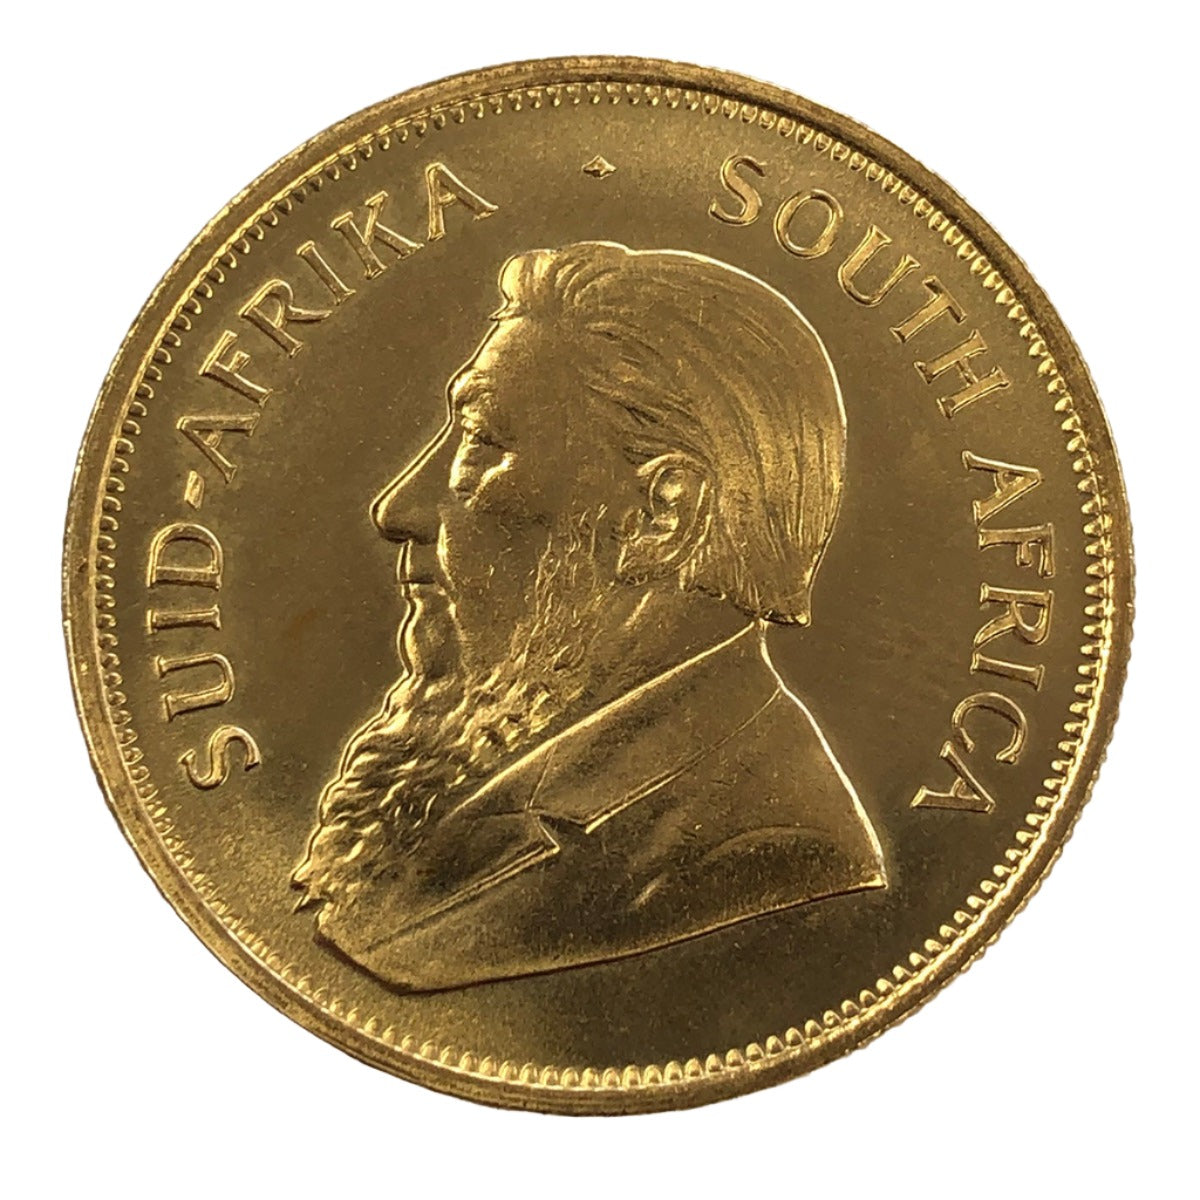 1978 South African 1 oz Gold Krugerrand